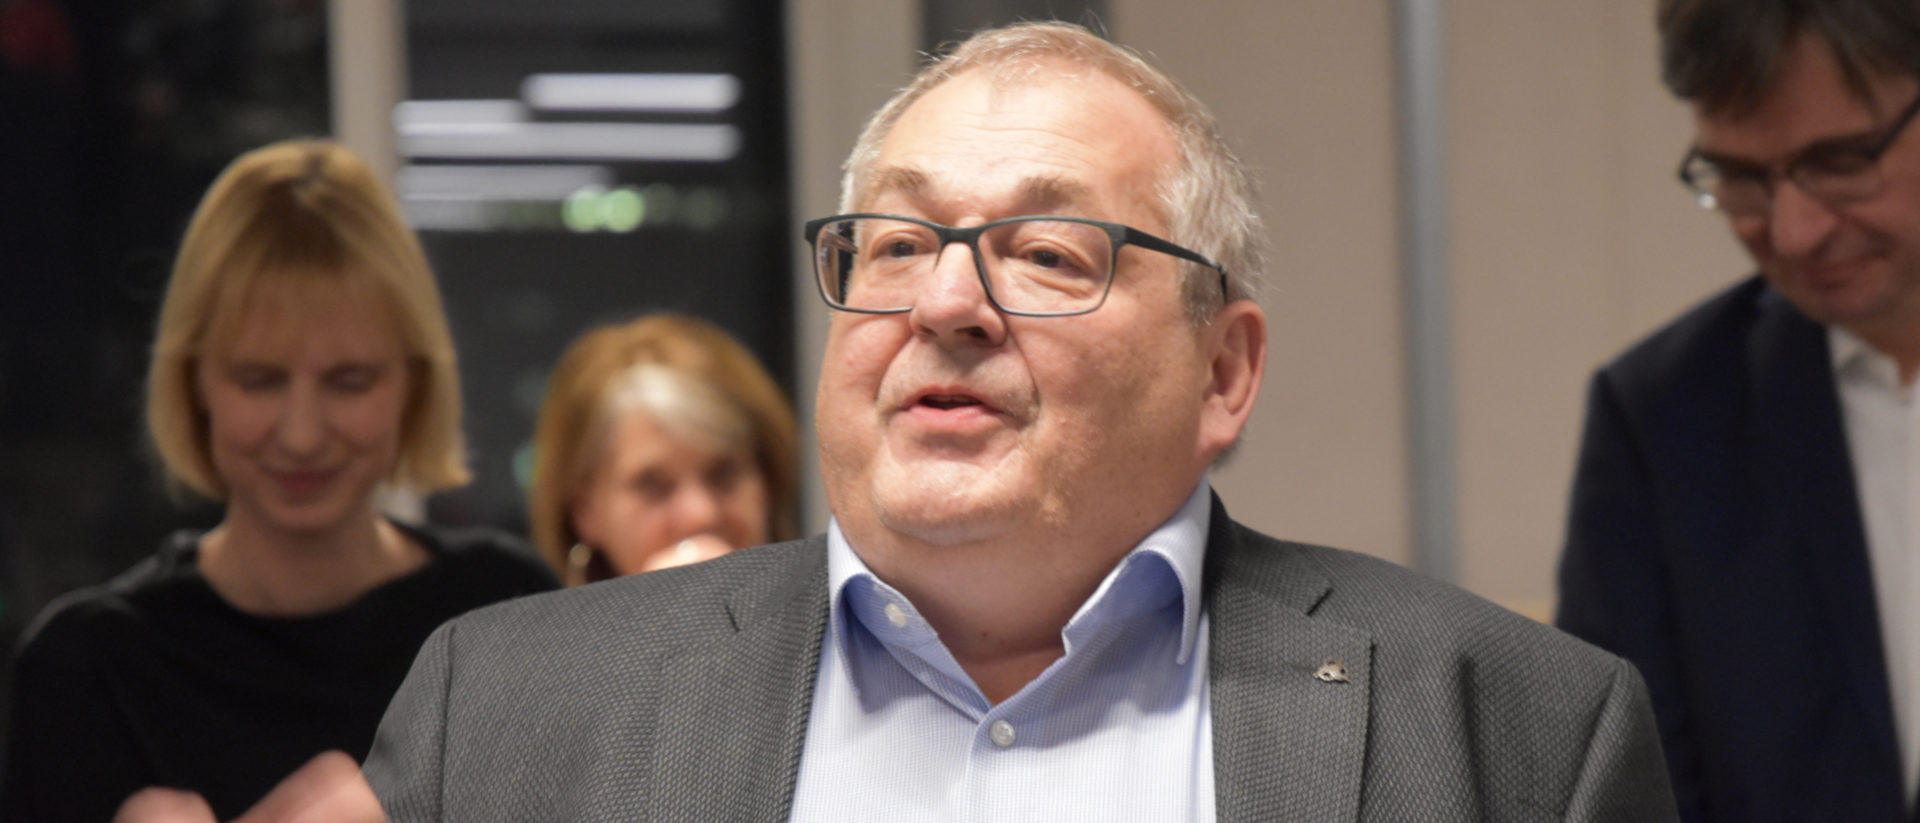 Odilo Noti wird neuer Präsident der Herbert Haag-Stiftung.